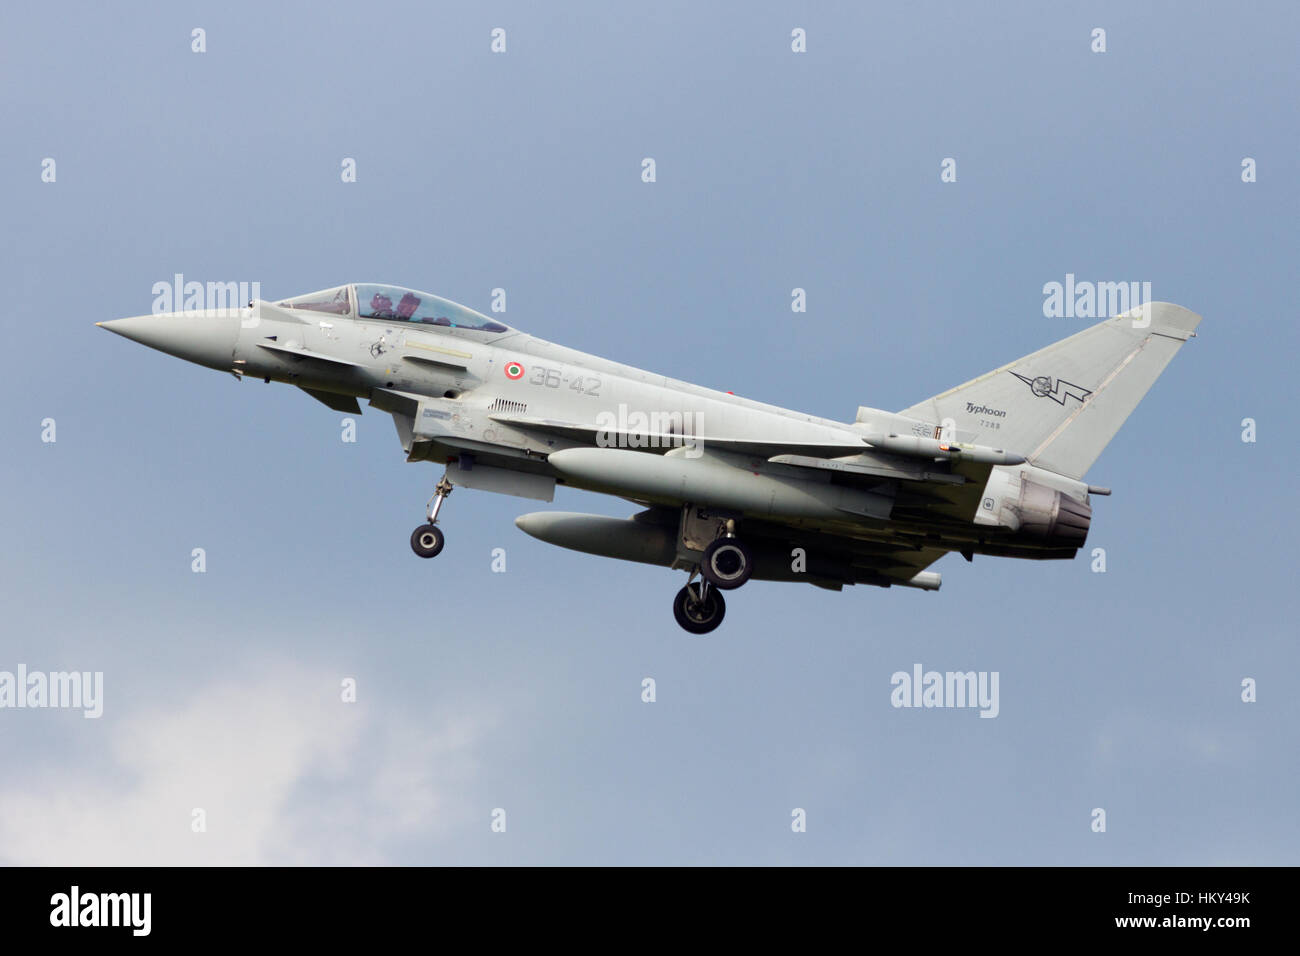 VOLKEL, Niederlande - SEP 25: Eine italienische Luftwaffe Eurofighter Typhoon Landung auf Volkel Airbase am Sep 25, 2014 in Volkel, Niederlande. Stockfoto